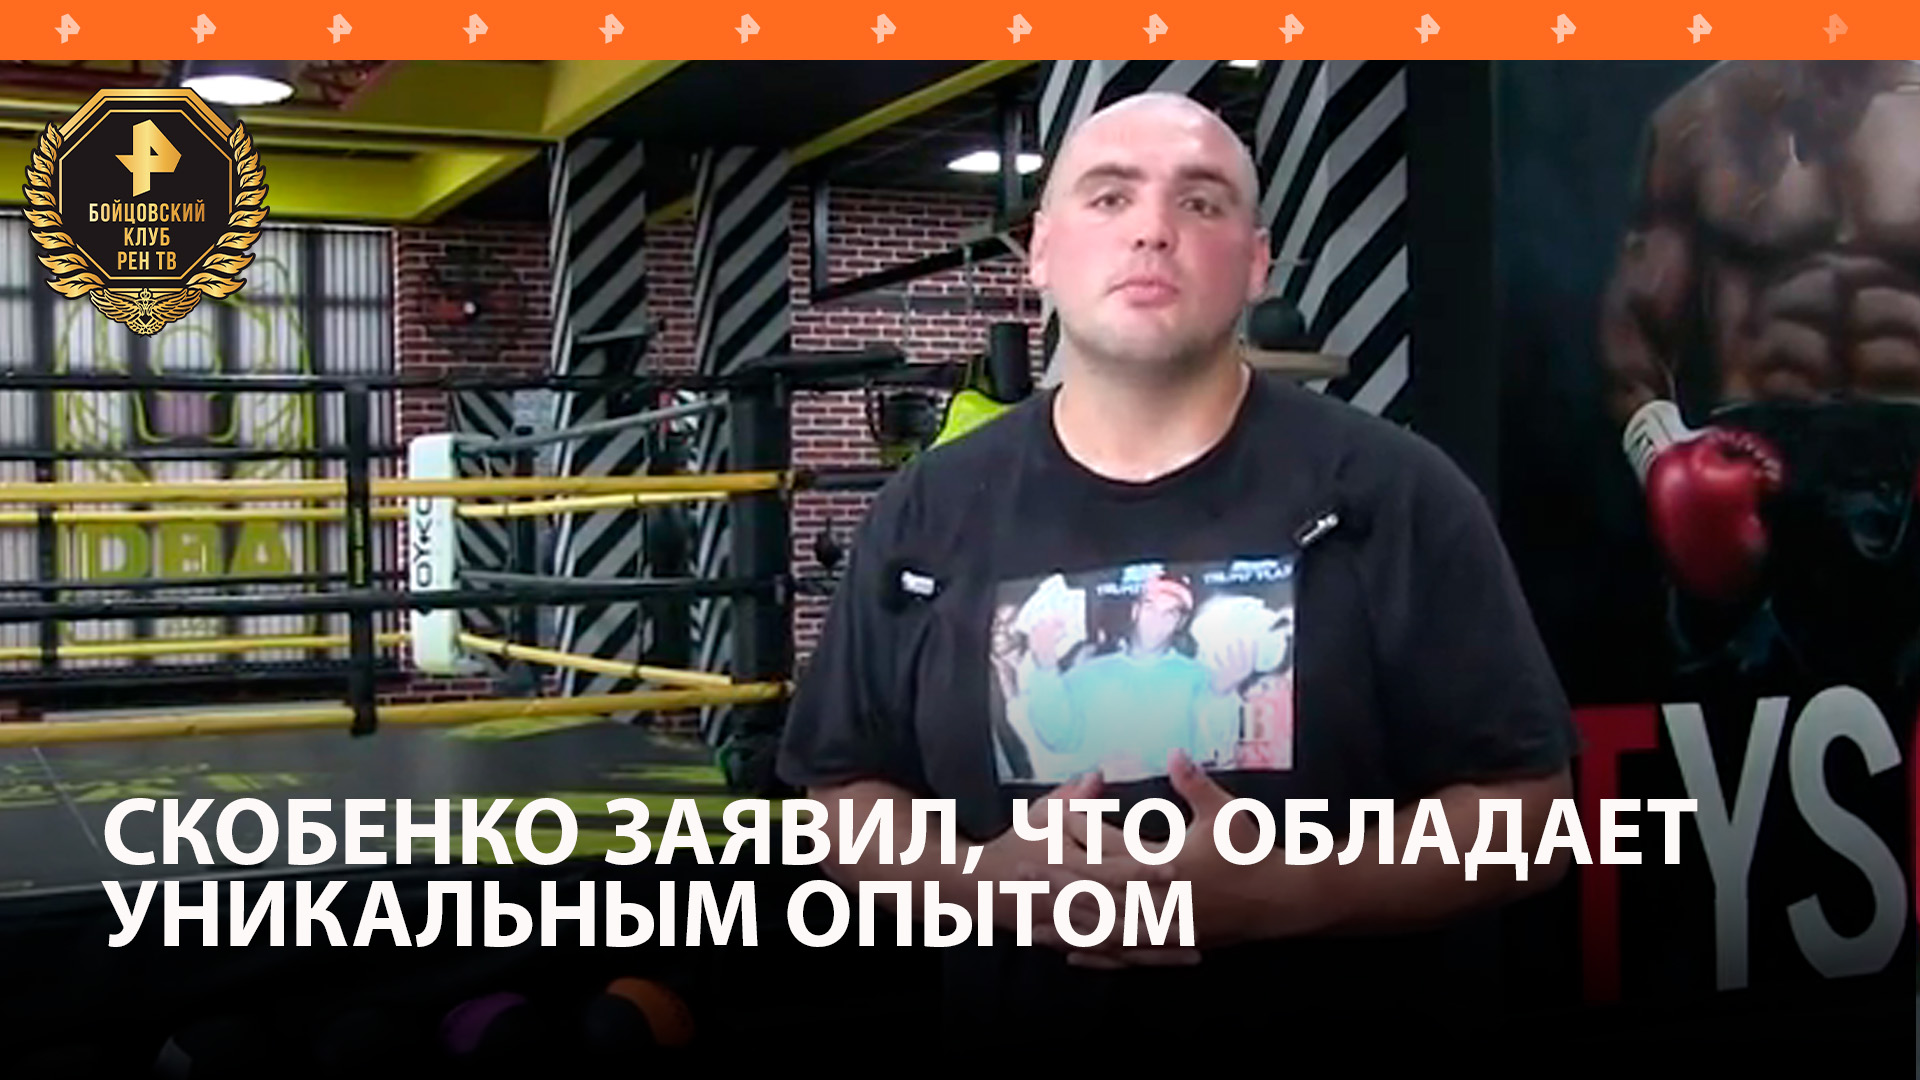 Скобенко перед боем с Суровым заявил, что обладает уникальным опытом / Бойцовский клуб РЕН ТВ